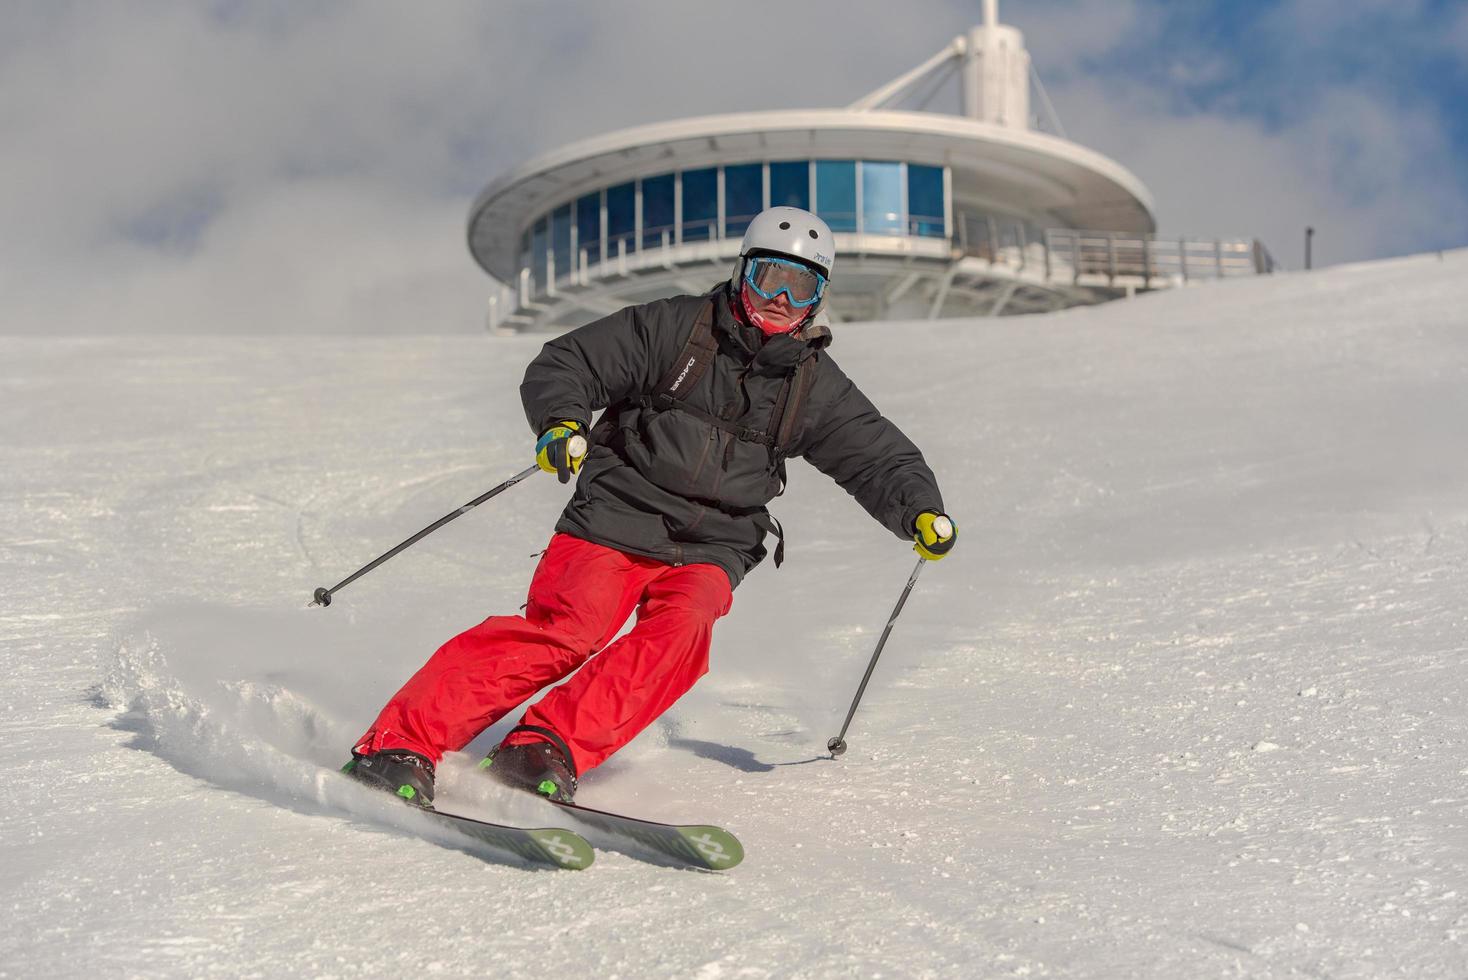 grandvalira, andorra. 2021 11 december ung man åker skidor på Pyrenéerna på skidorten Grandvalira i Andorra under covid19-tiden foto